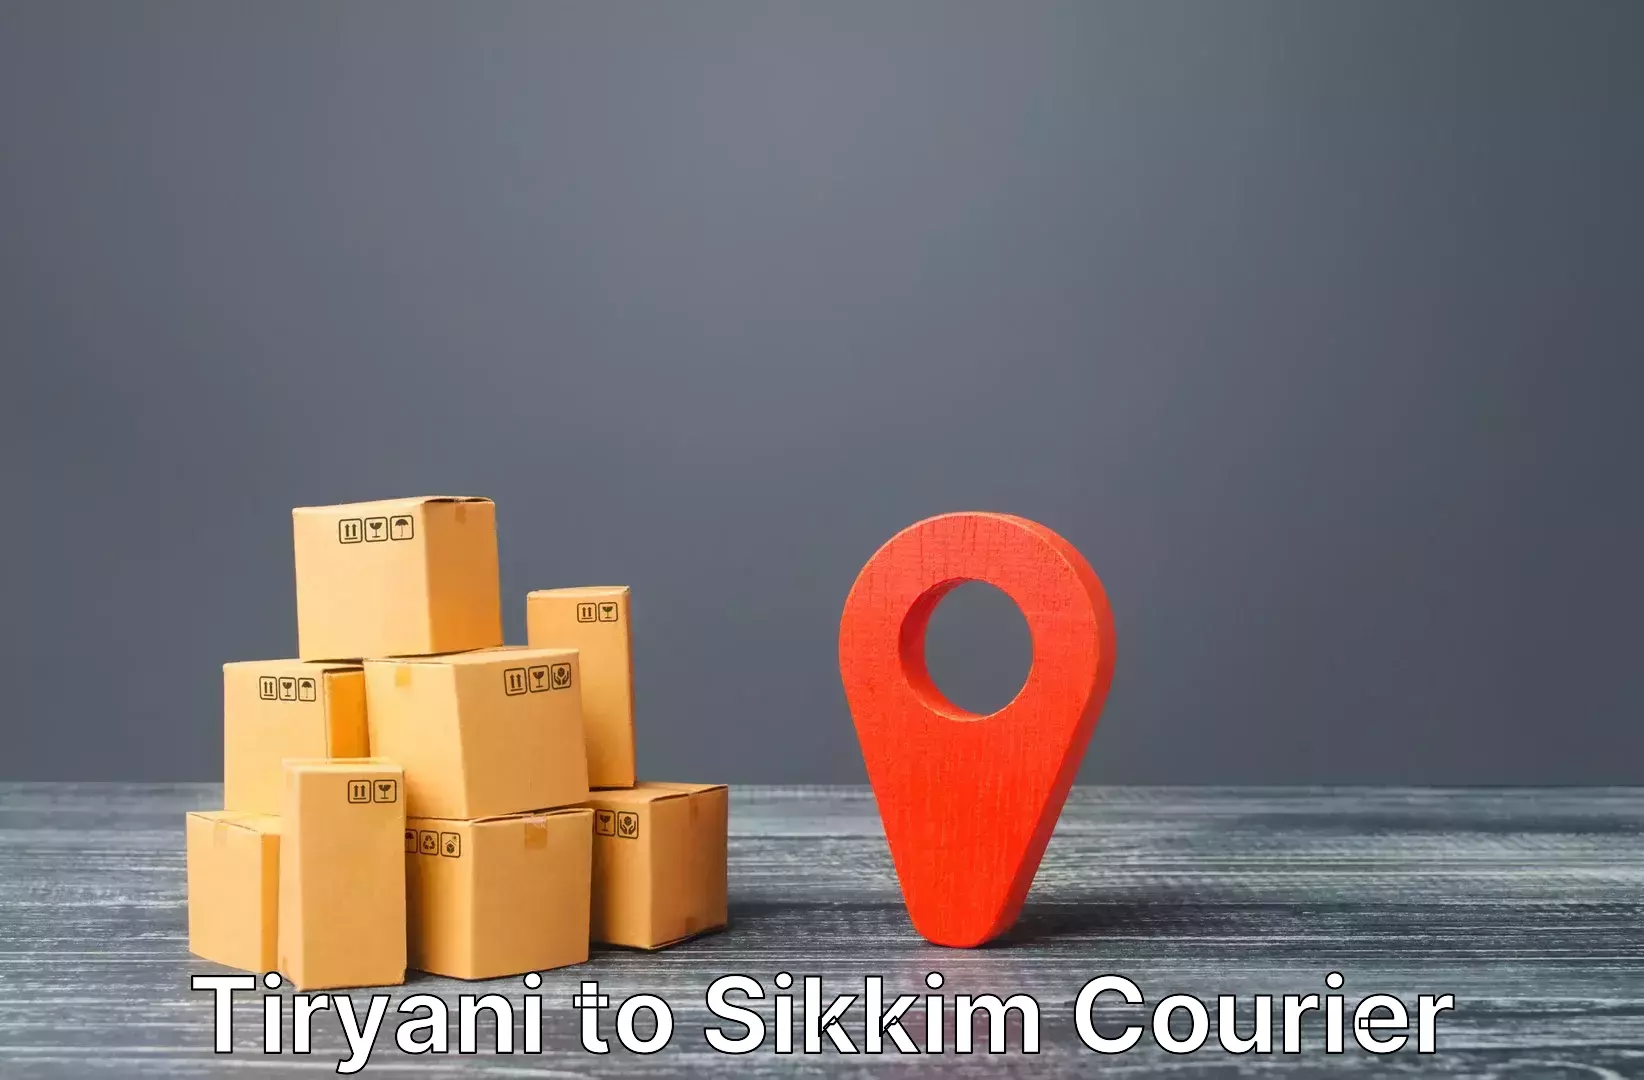 Luggage shipment specialists Tiryani to West Sikkim